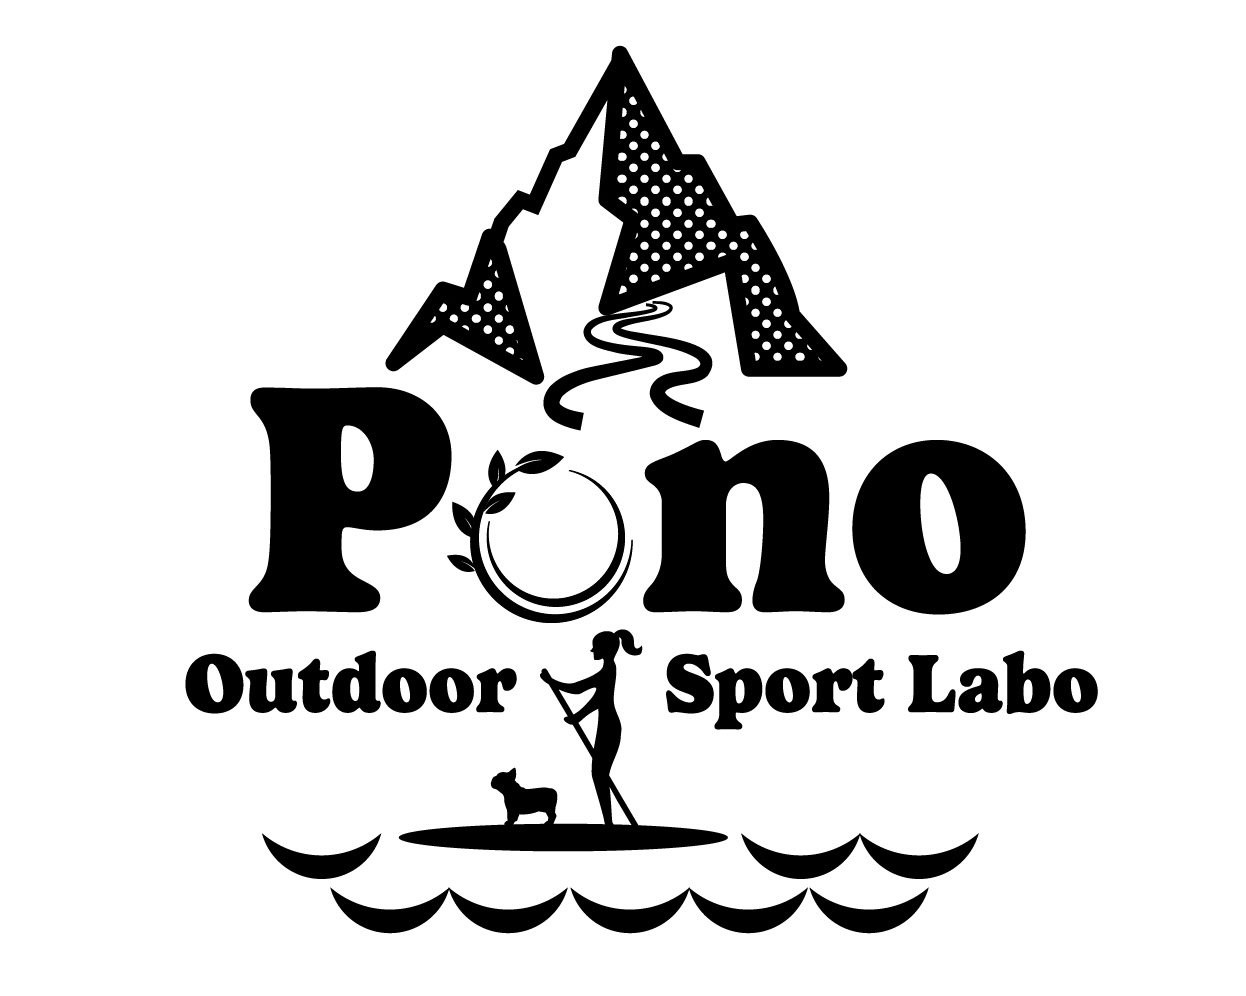 Pono Outdoor Sport Labo